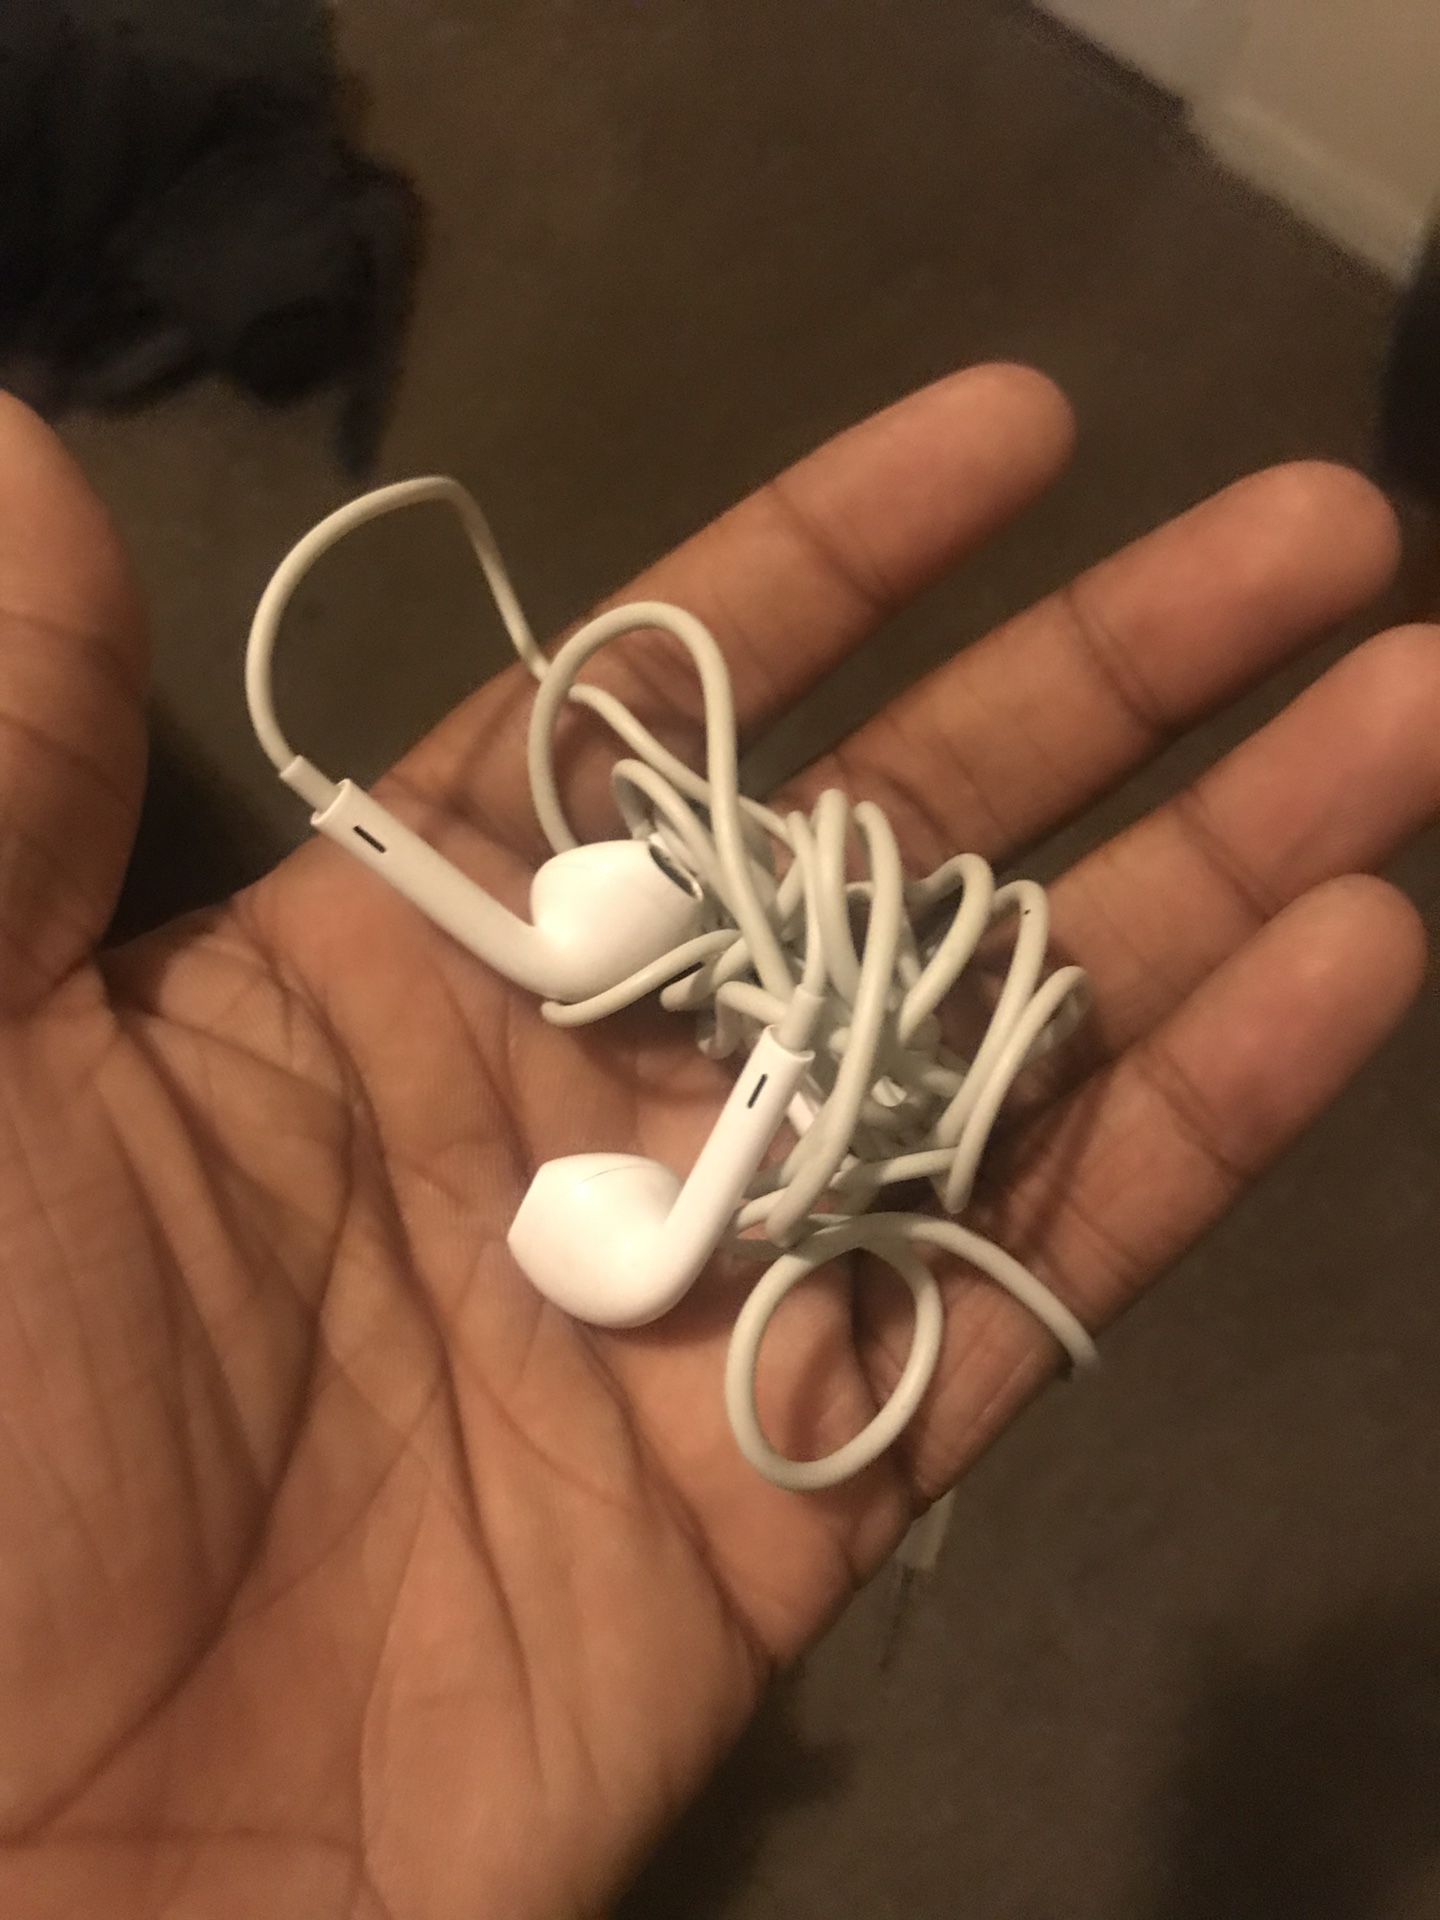 Wired iPhone headphones